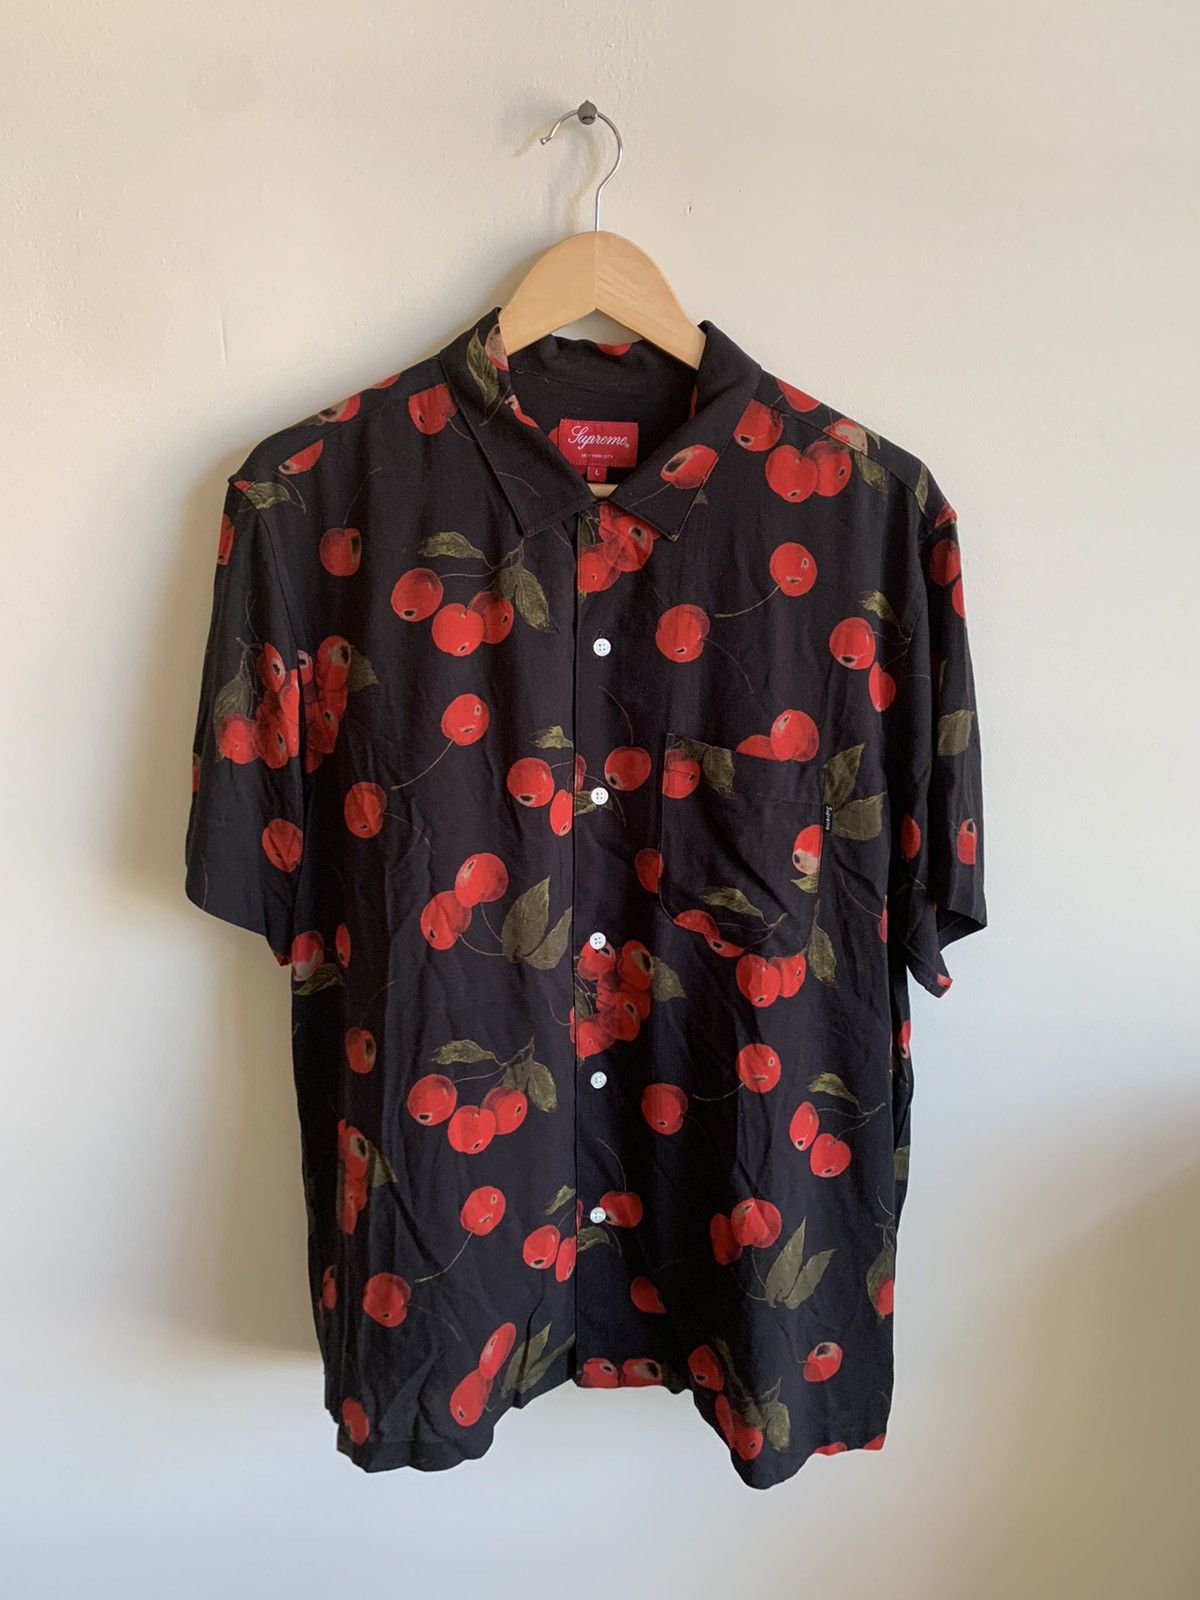 Supreme Cherry Rayon Shirt | Grailed